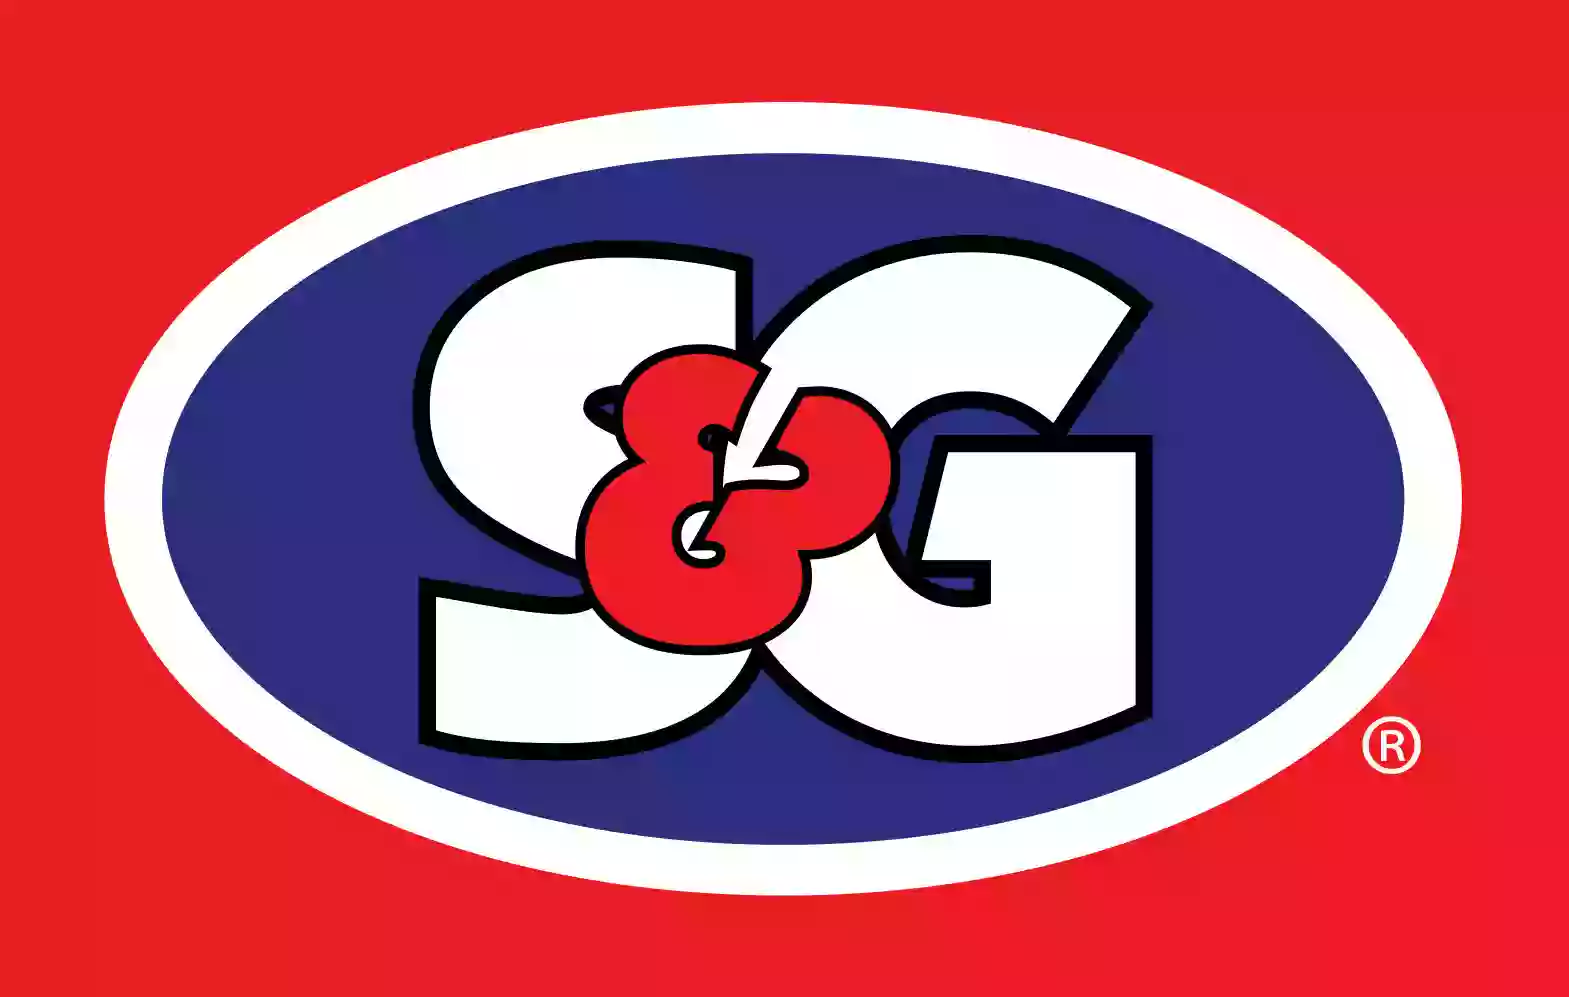 S&G #69